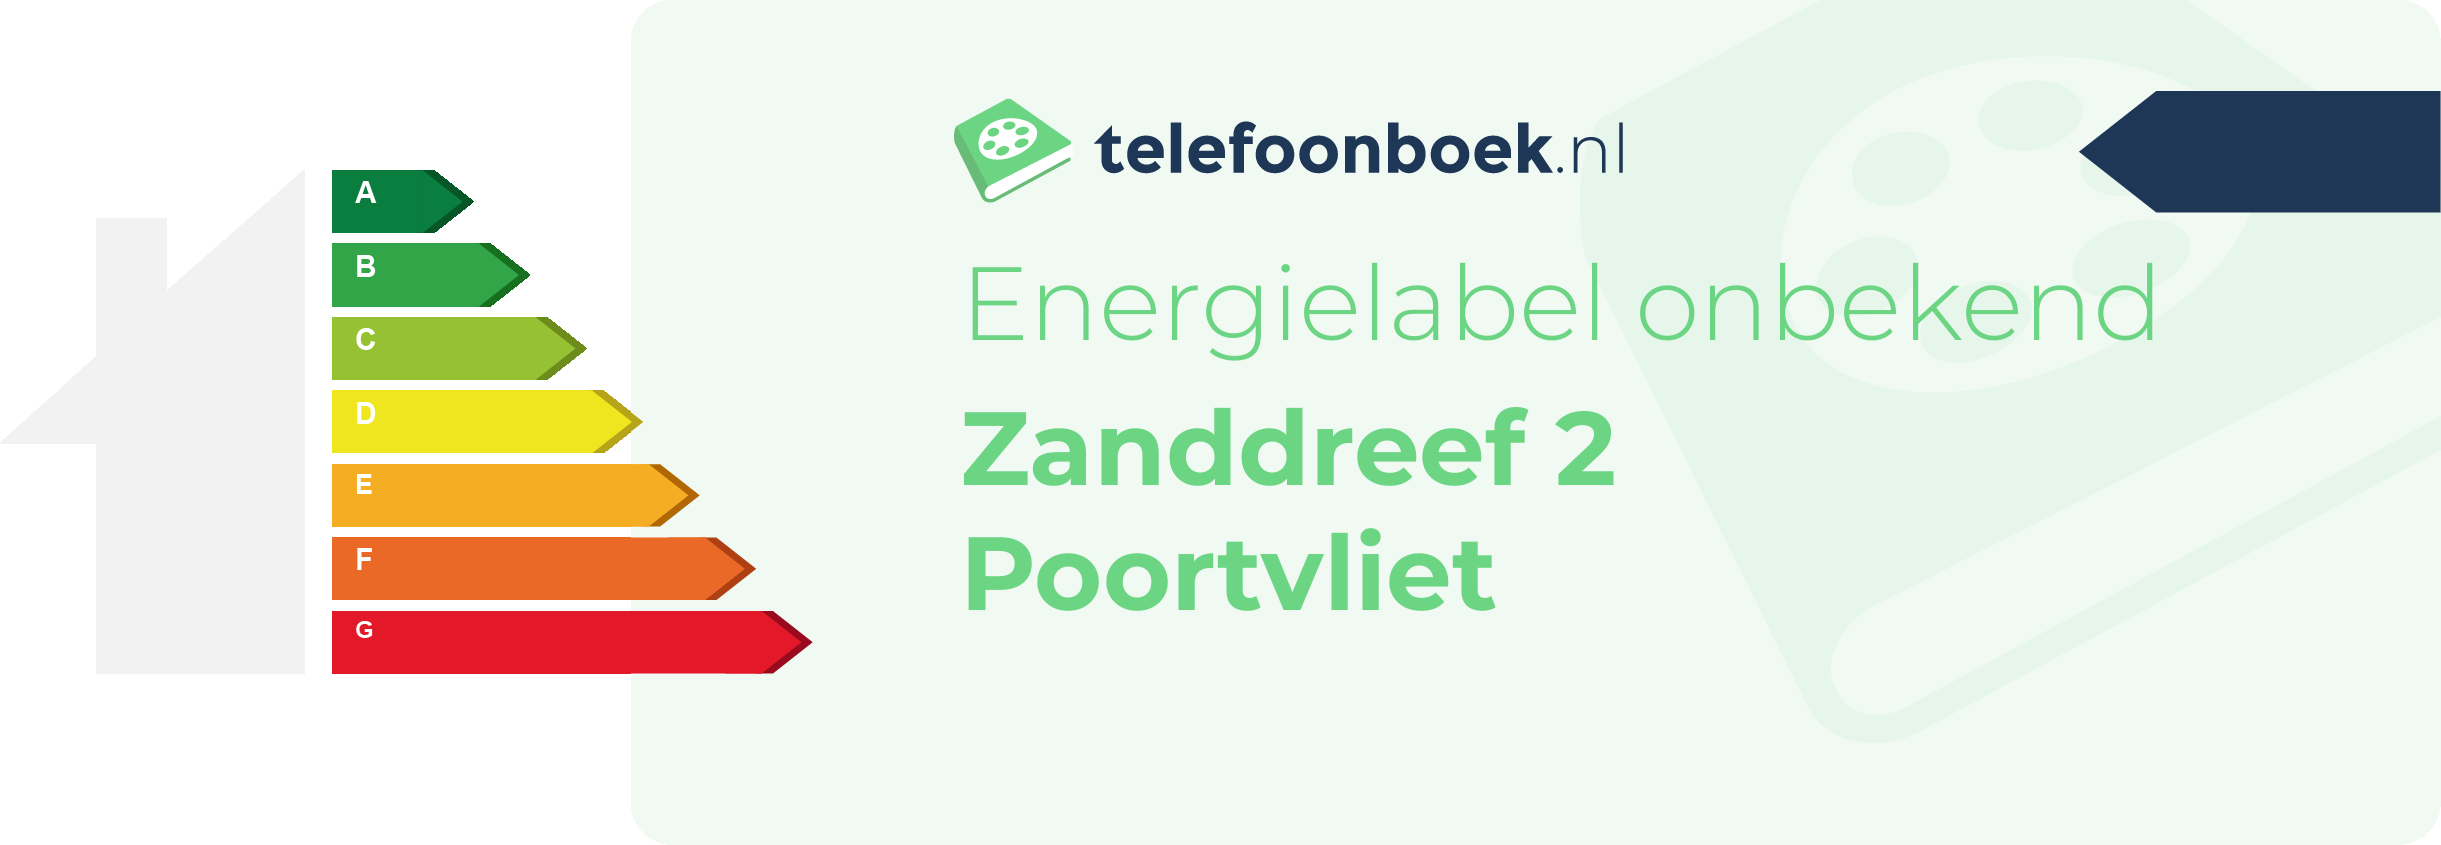 Energielabel Zanddreef 2 Poortvliet